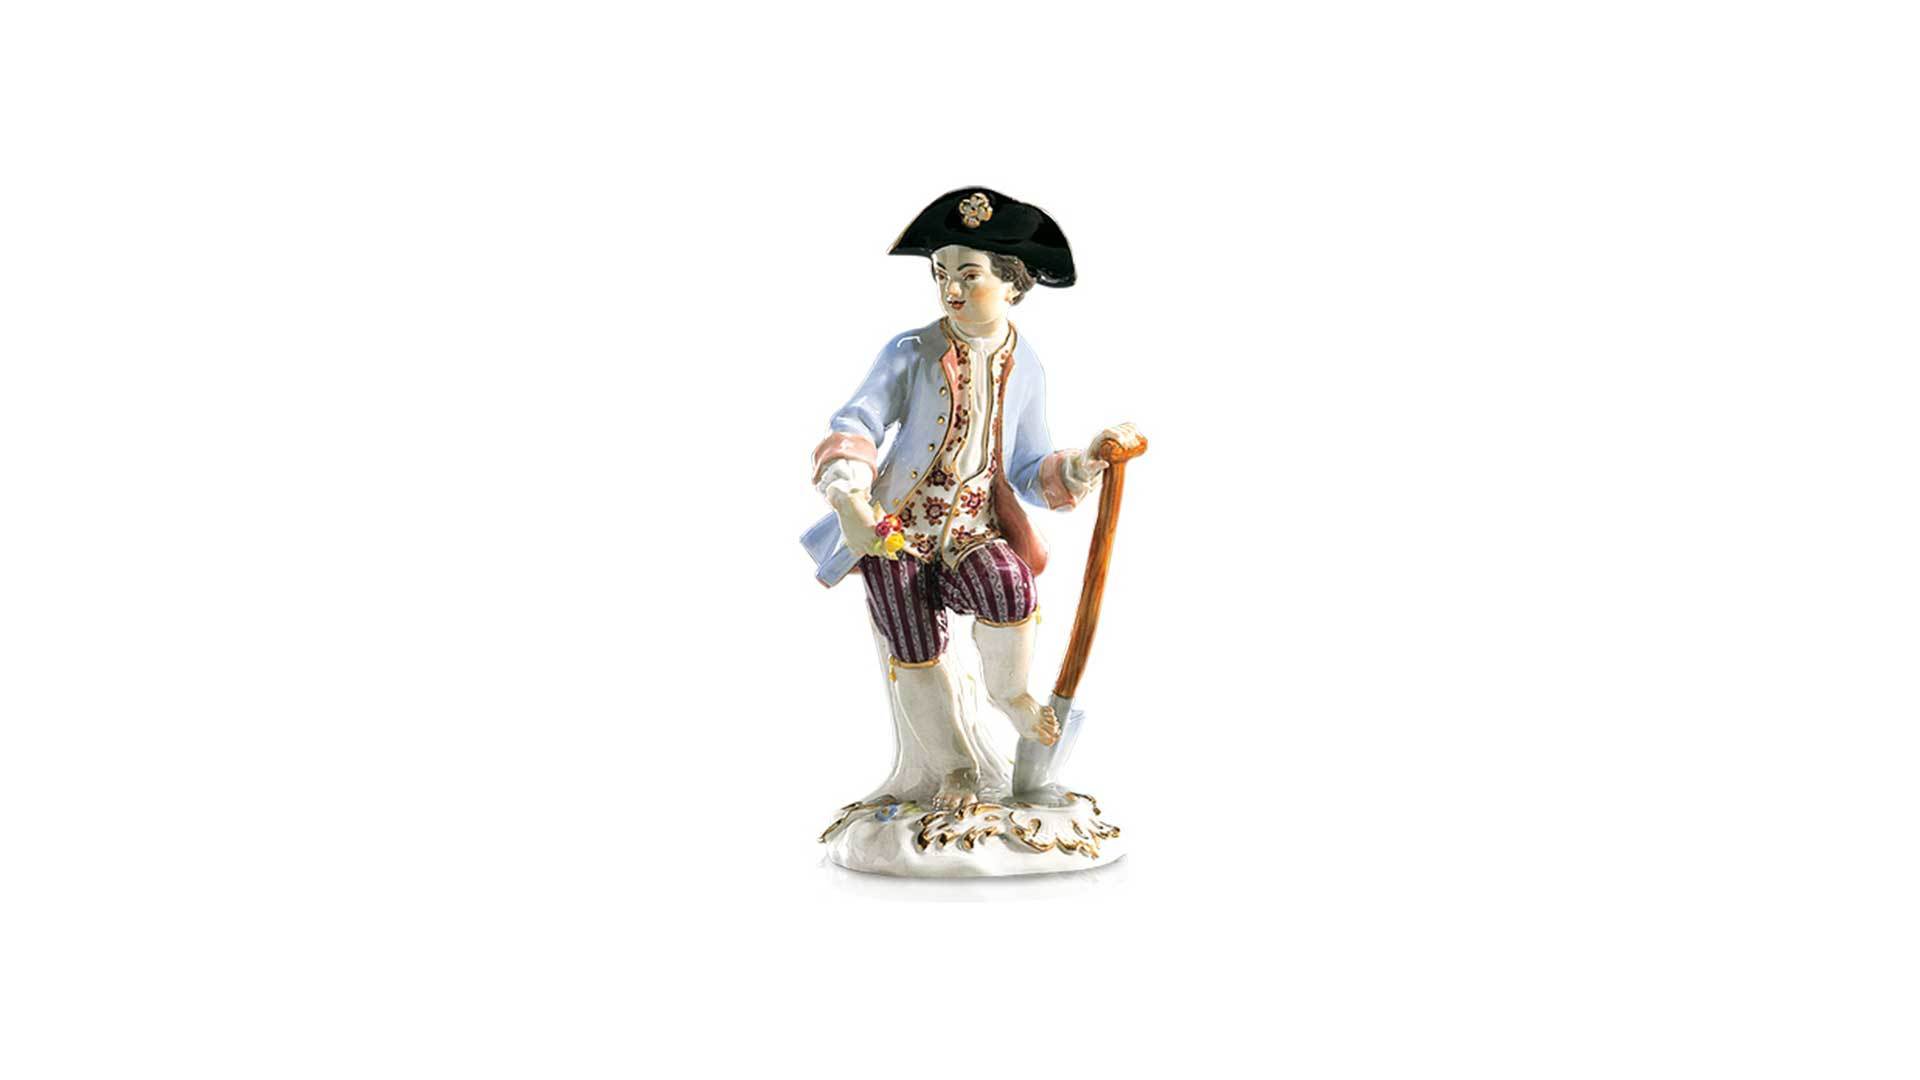 Фигурка Meissen 16 см Мальчик с лопатой, И-ИКэндлер,1740г, пара к 60303